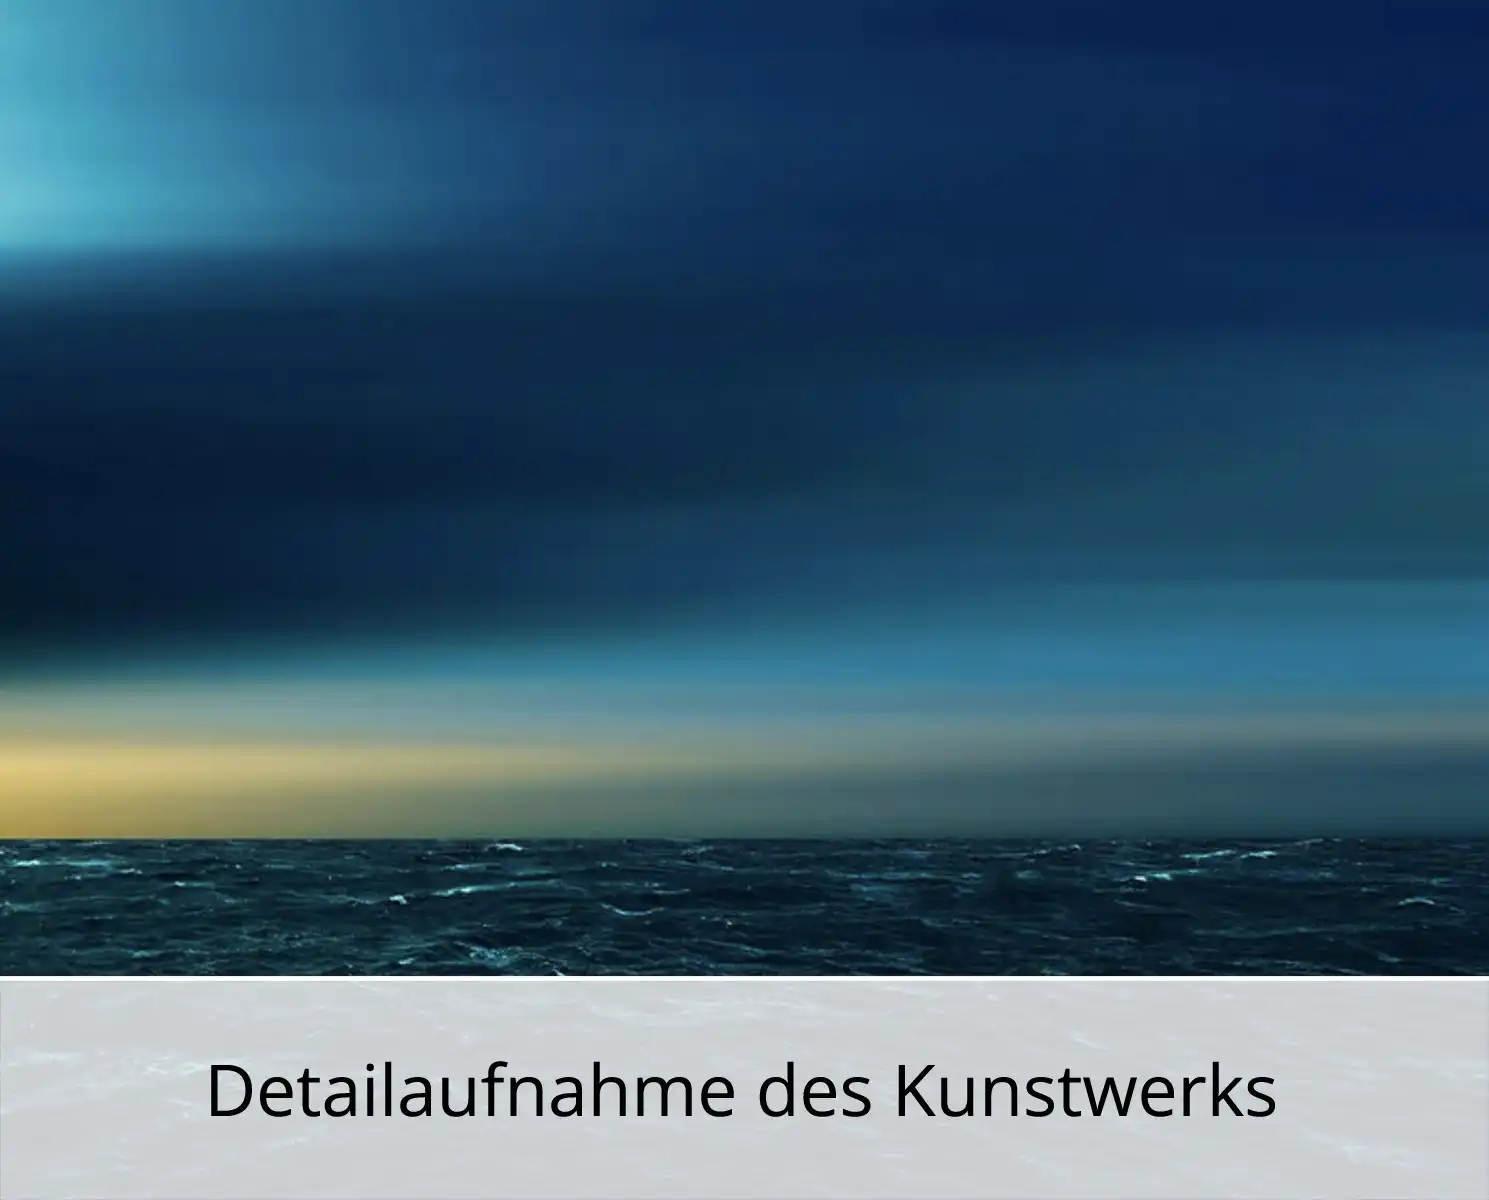 H. Mühlbauer-Gardemin: "Horizont in Blaugrün und Gelb", Zeitgenössische Digitalkunst, Edition